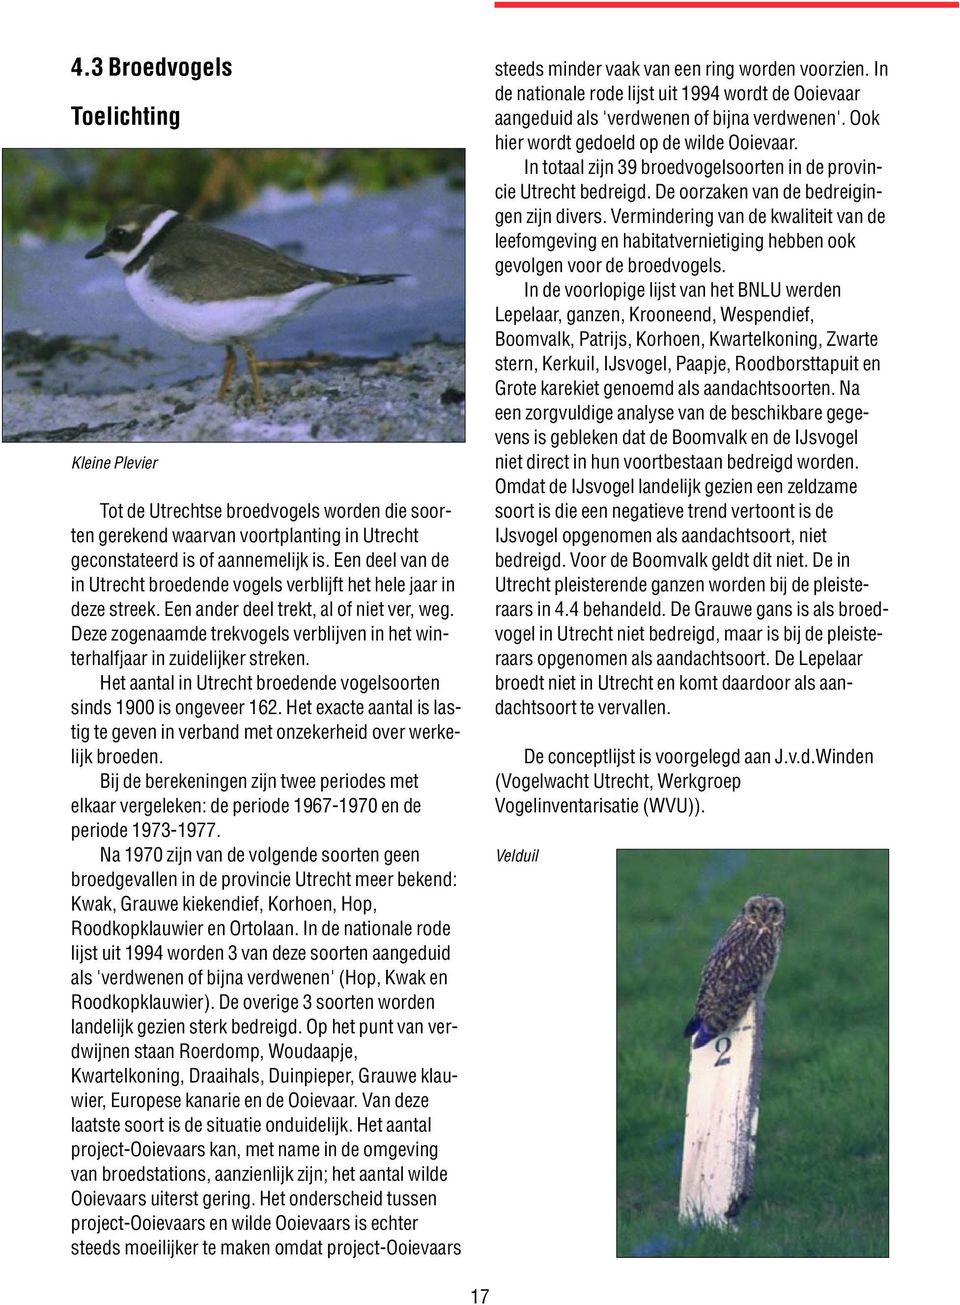 Deze zogenaamde trekvogels verblijven in het winterhalfjaar in zuidelijker streken. Het aantal in Utrecht broedende vogelsoorten sinds 1900 is ongeveer 162.